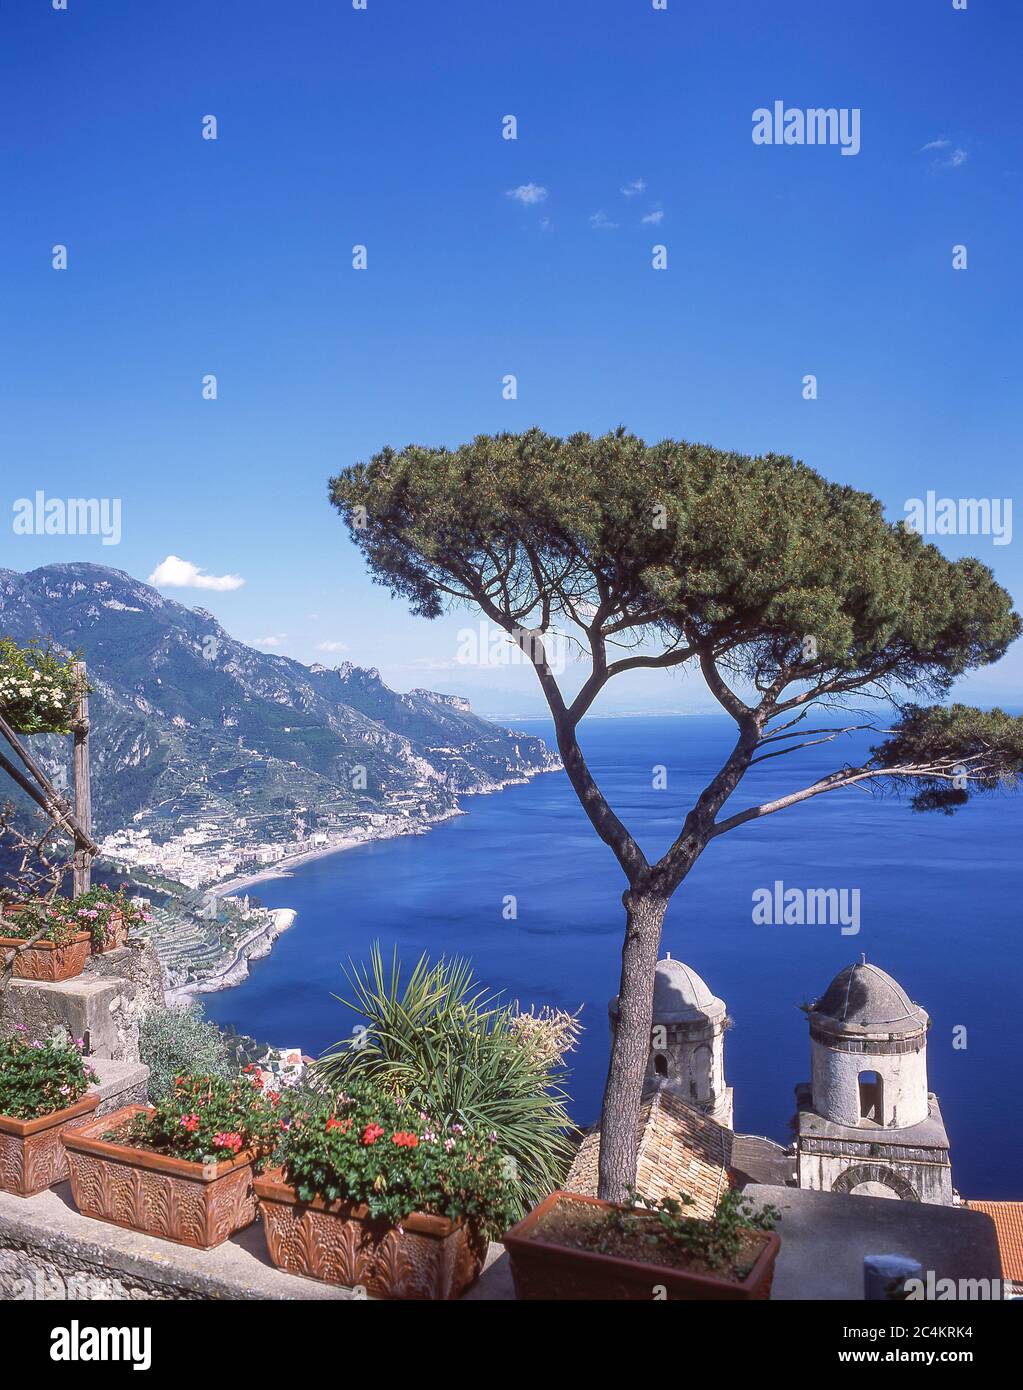 Coastal view from Villa Rufolo, Ravello, Amalfi Coast, Province of Salerno, Campania Region, Italy Stock Photo